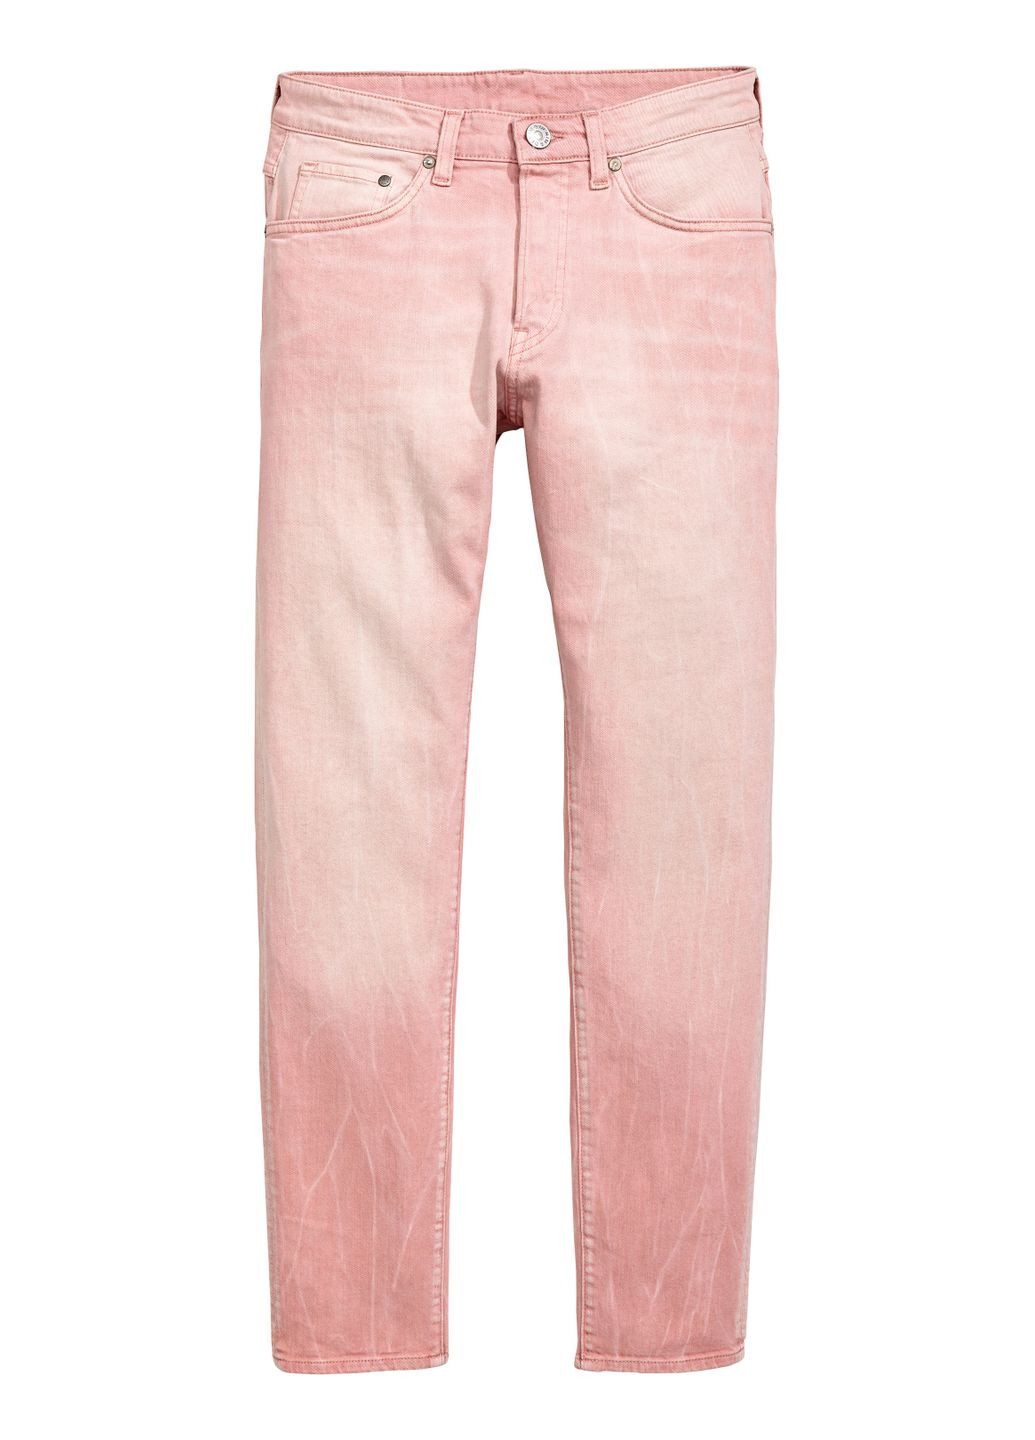 Светло-розовые джинсы демисезон,светло-розовый, H&M